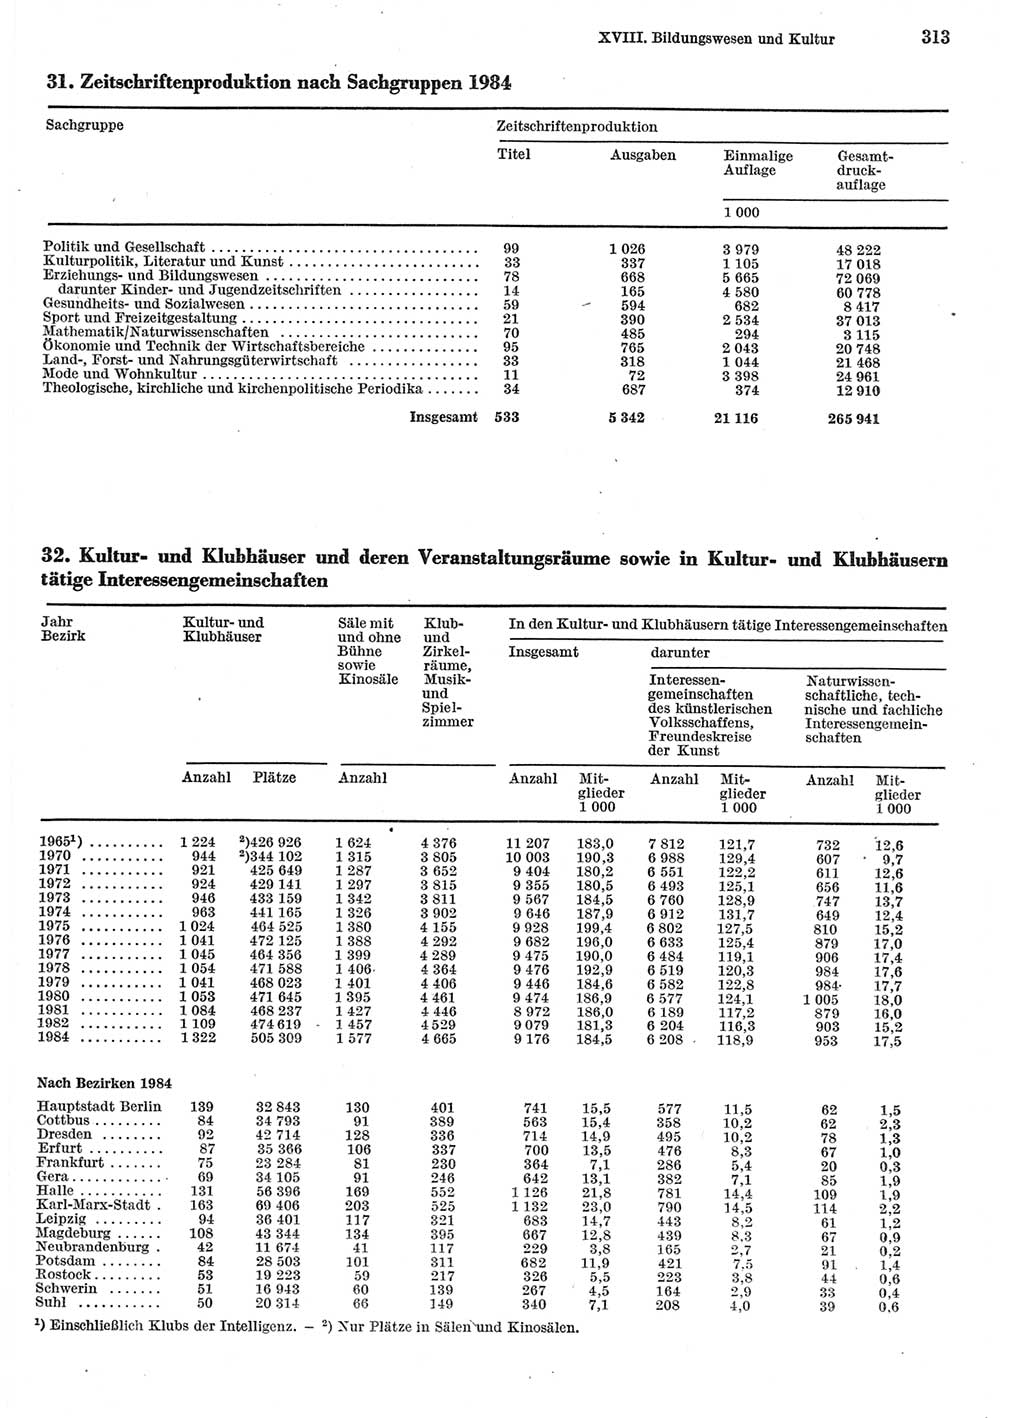 Statistisches Jahrbuch der Deutschen Demokratischen Republik (DDR) 1985, Seite 313 (Stat. Jb. DDR 1985, S. 313)